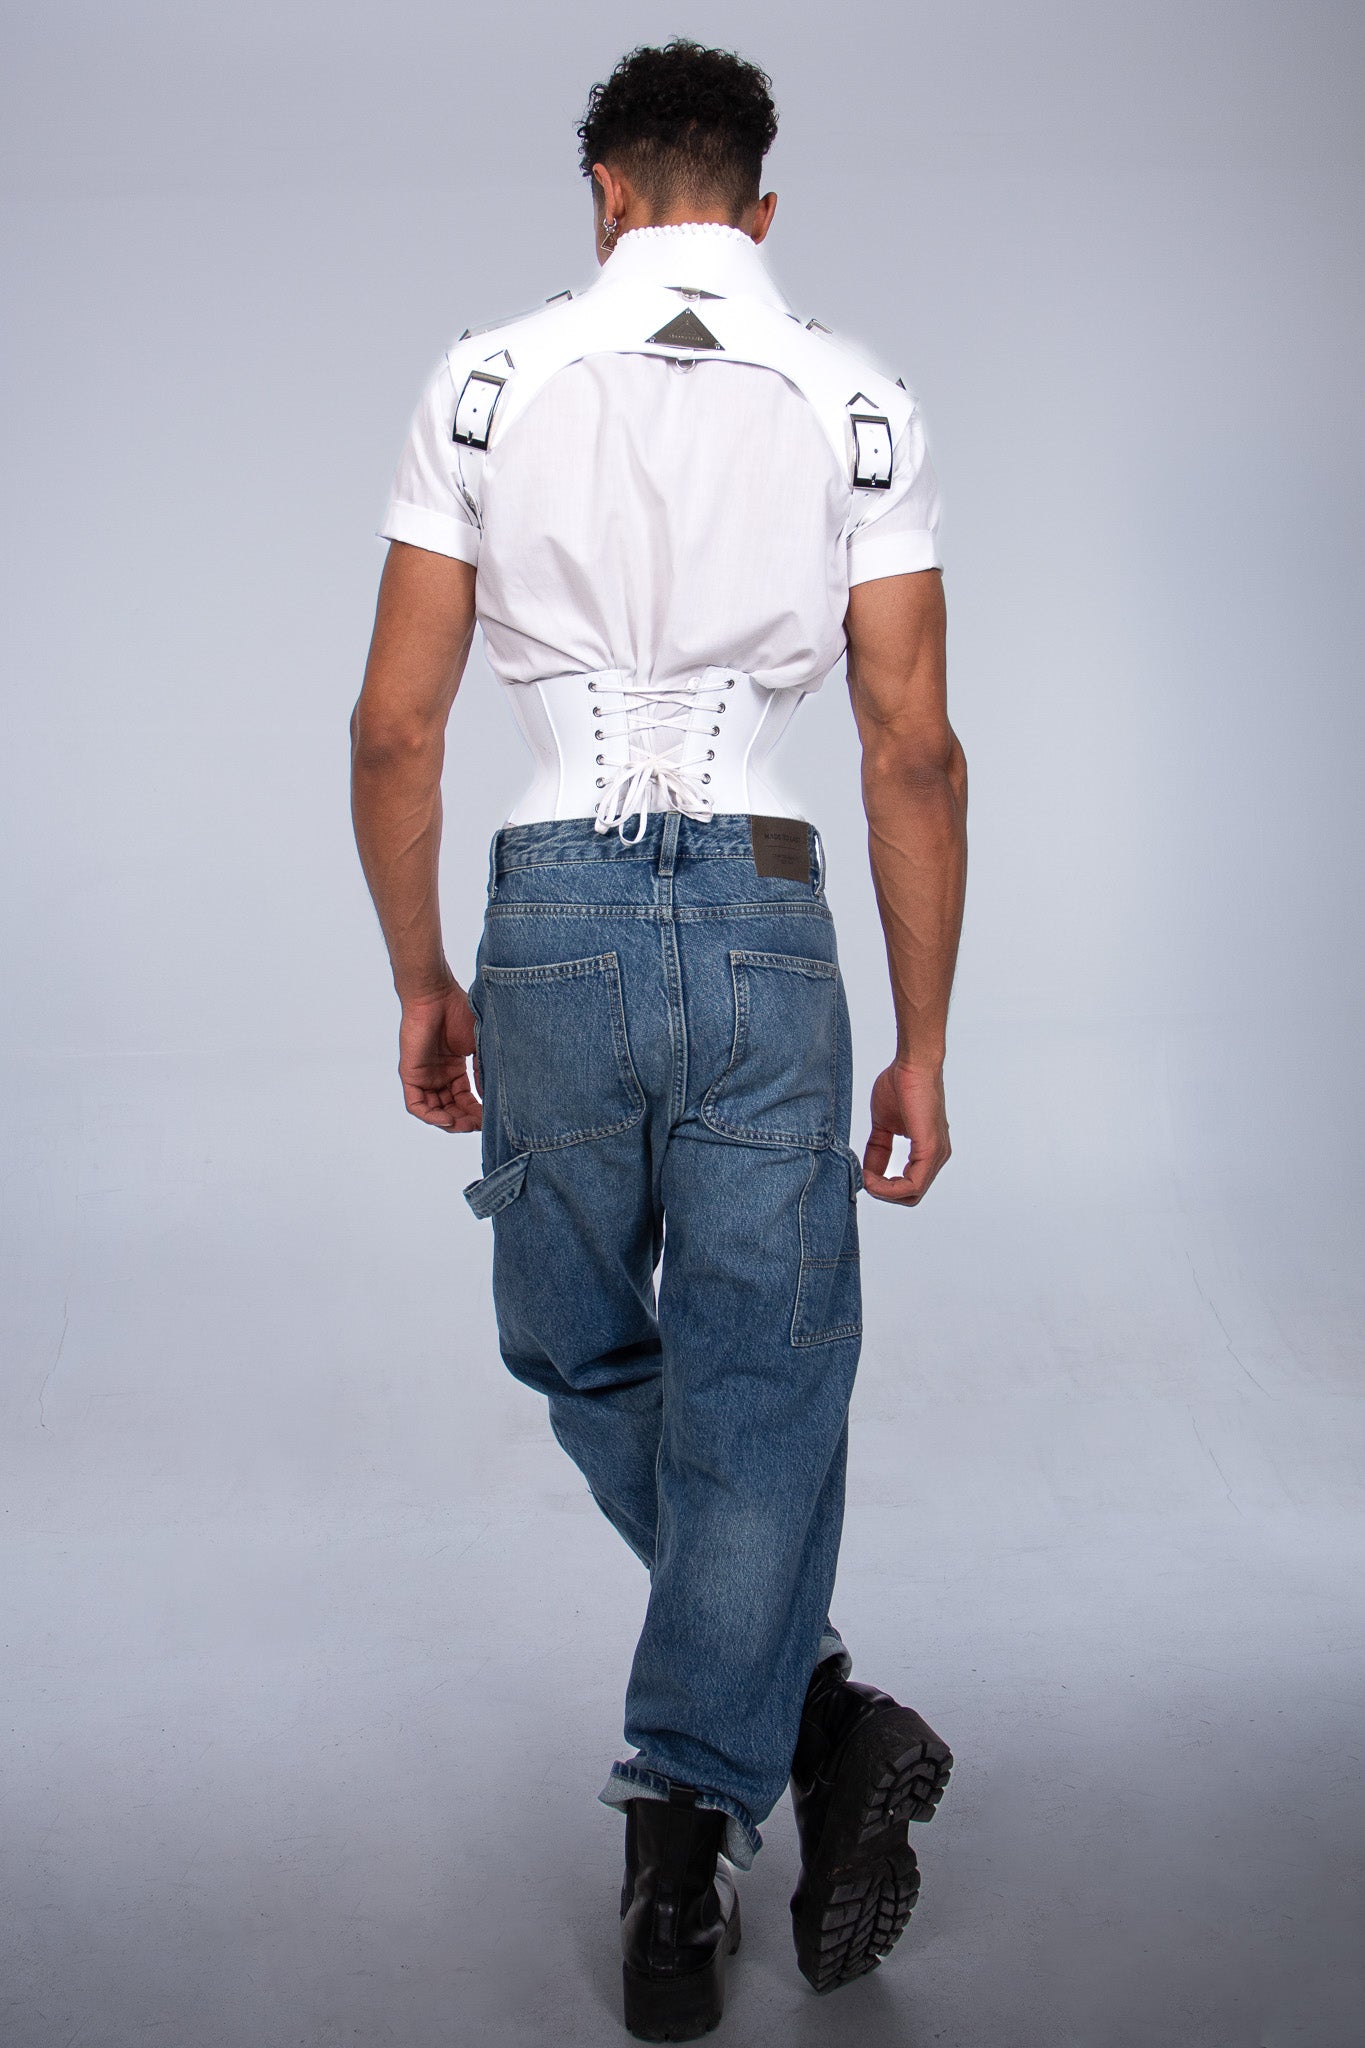 Fashion-forward Violetta corset belt in sleek white, ideal for defining your waistline